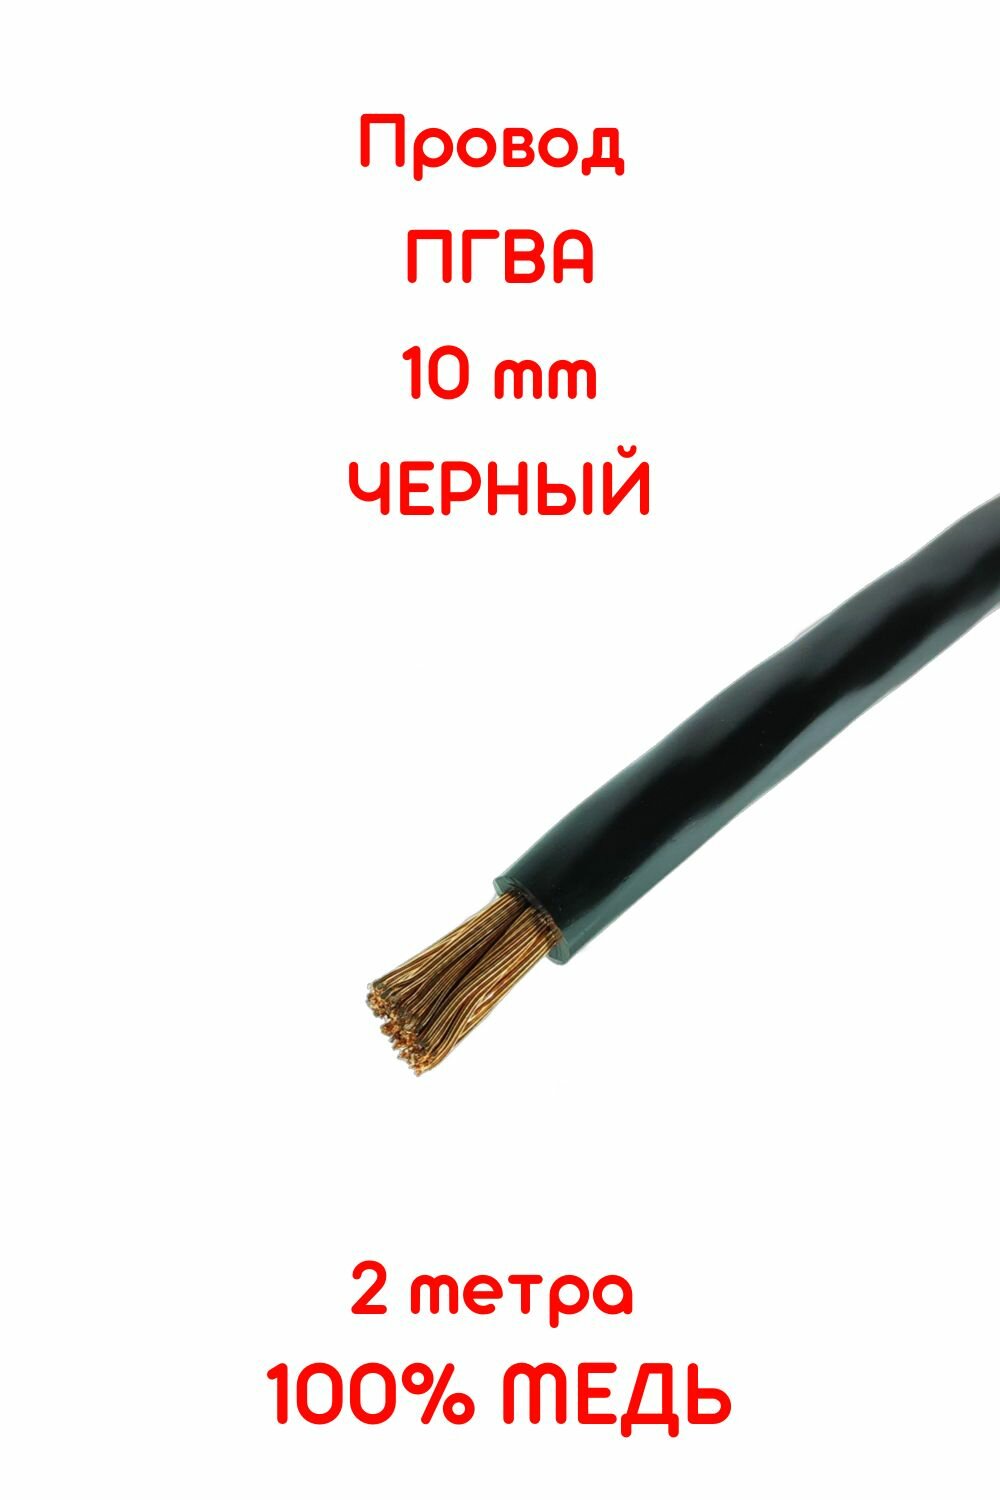 Провод автомобильный ПГВА 10 мм черный 2 метра (+-5%) чистая медь